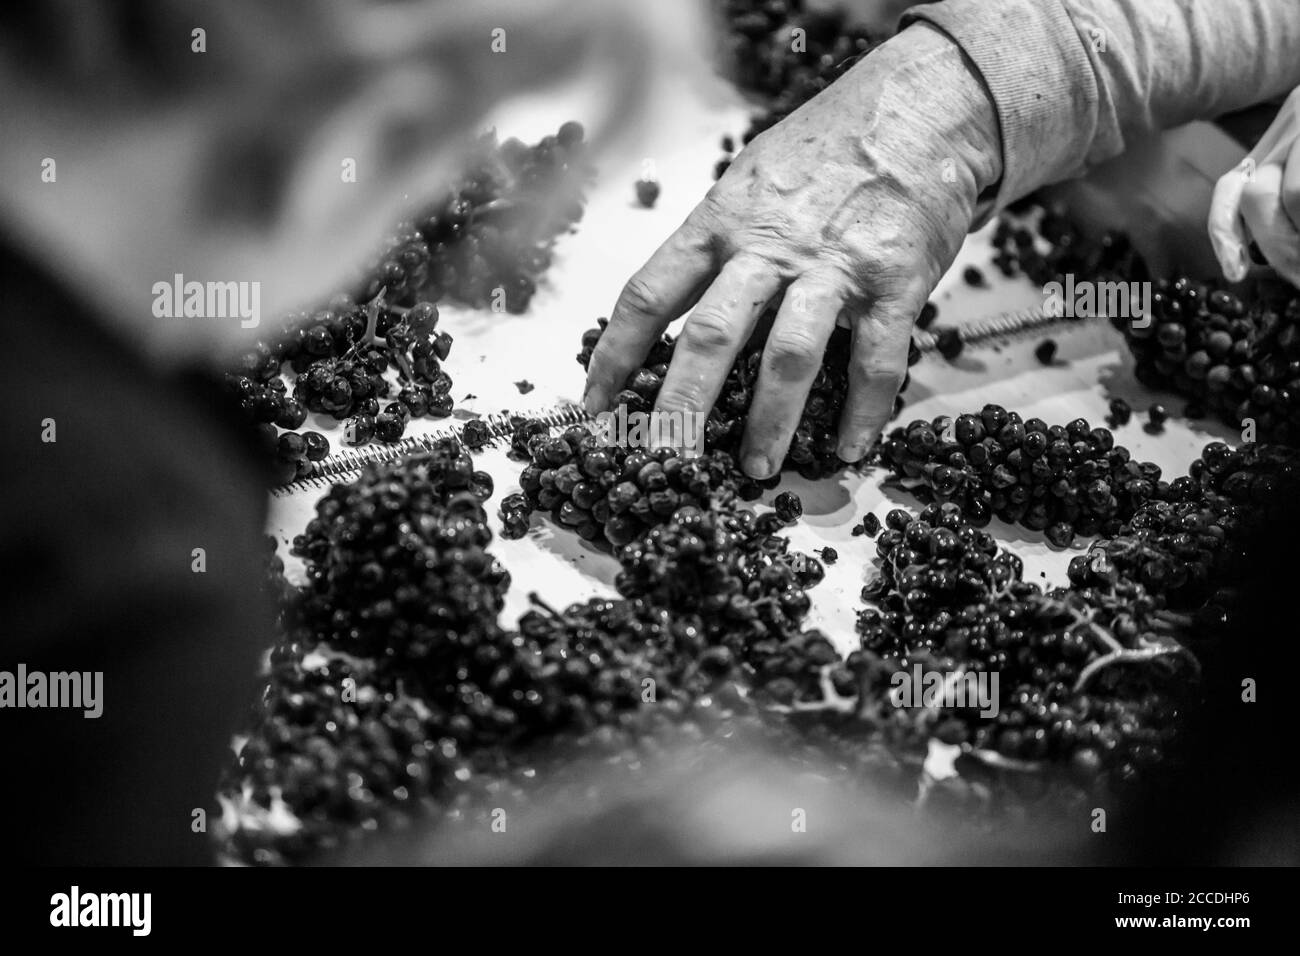 Image granuleuse et contrastée en noir et blanc des mains de sexe masculin triant les raisins sur un tapis roulant. Banque D'Images